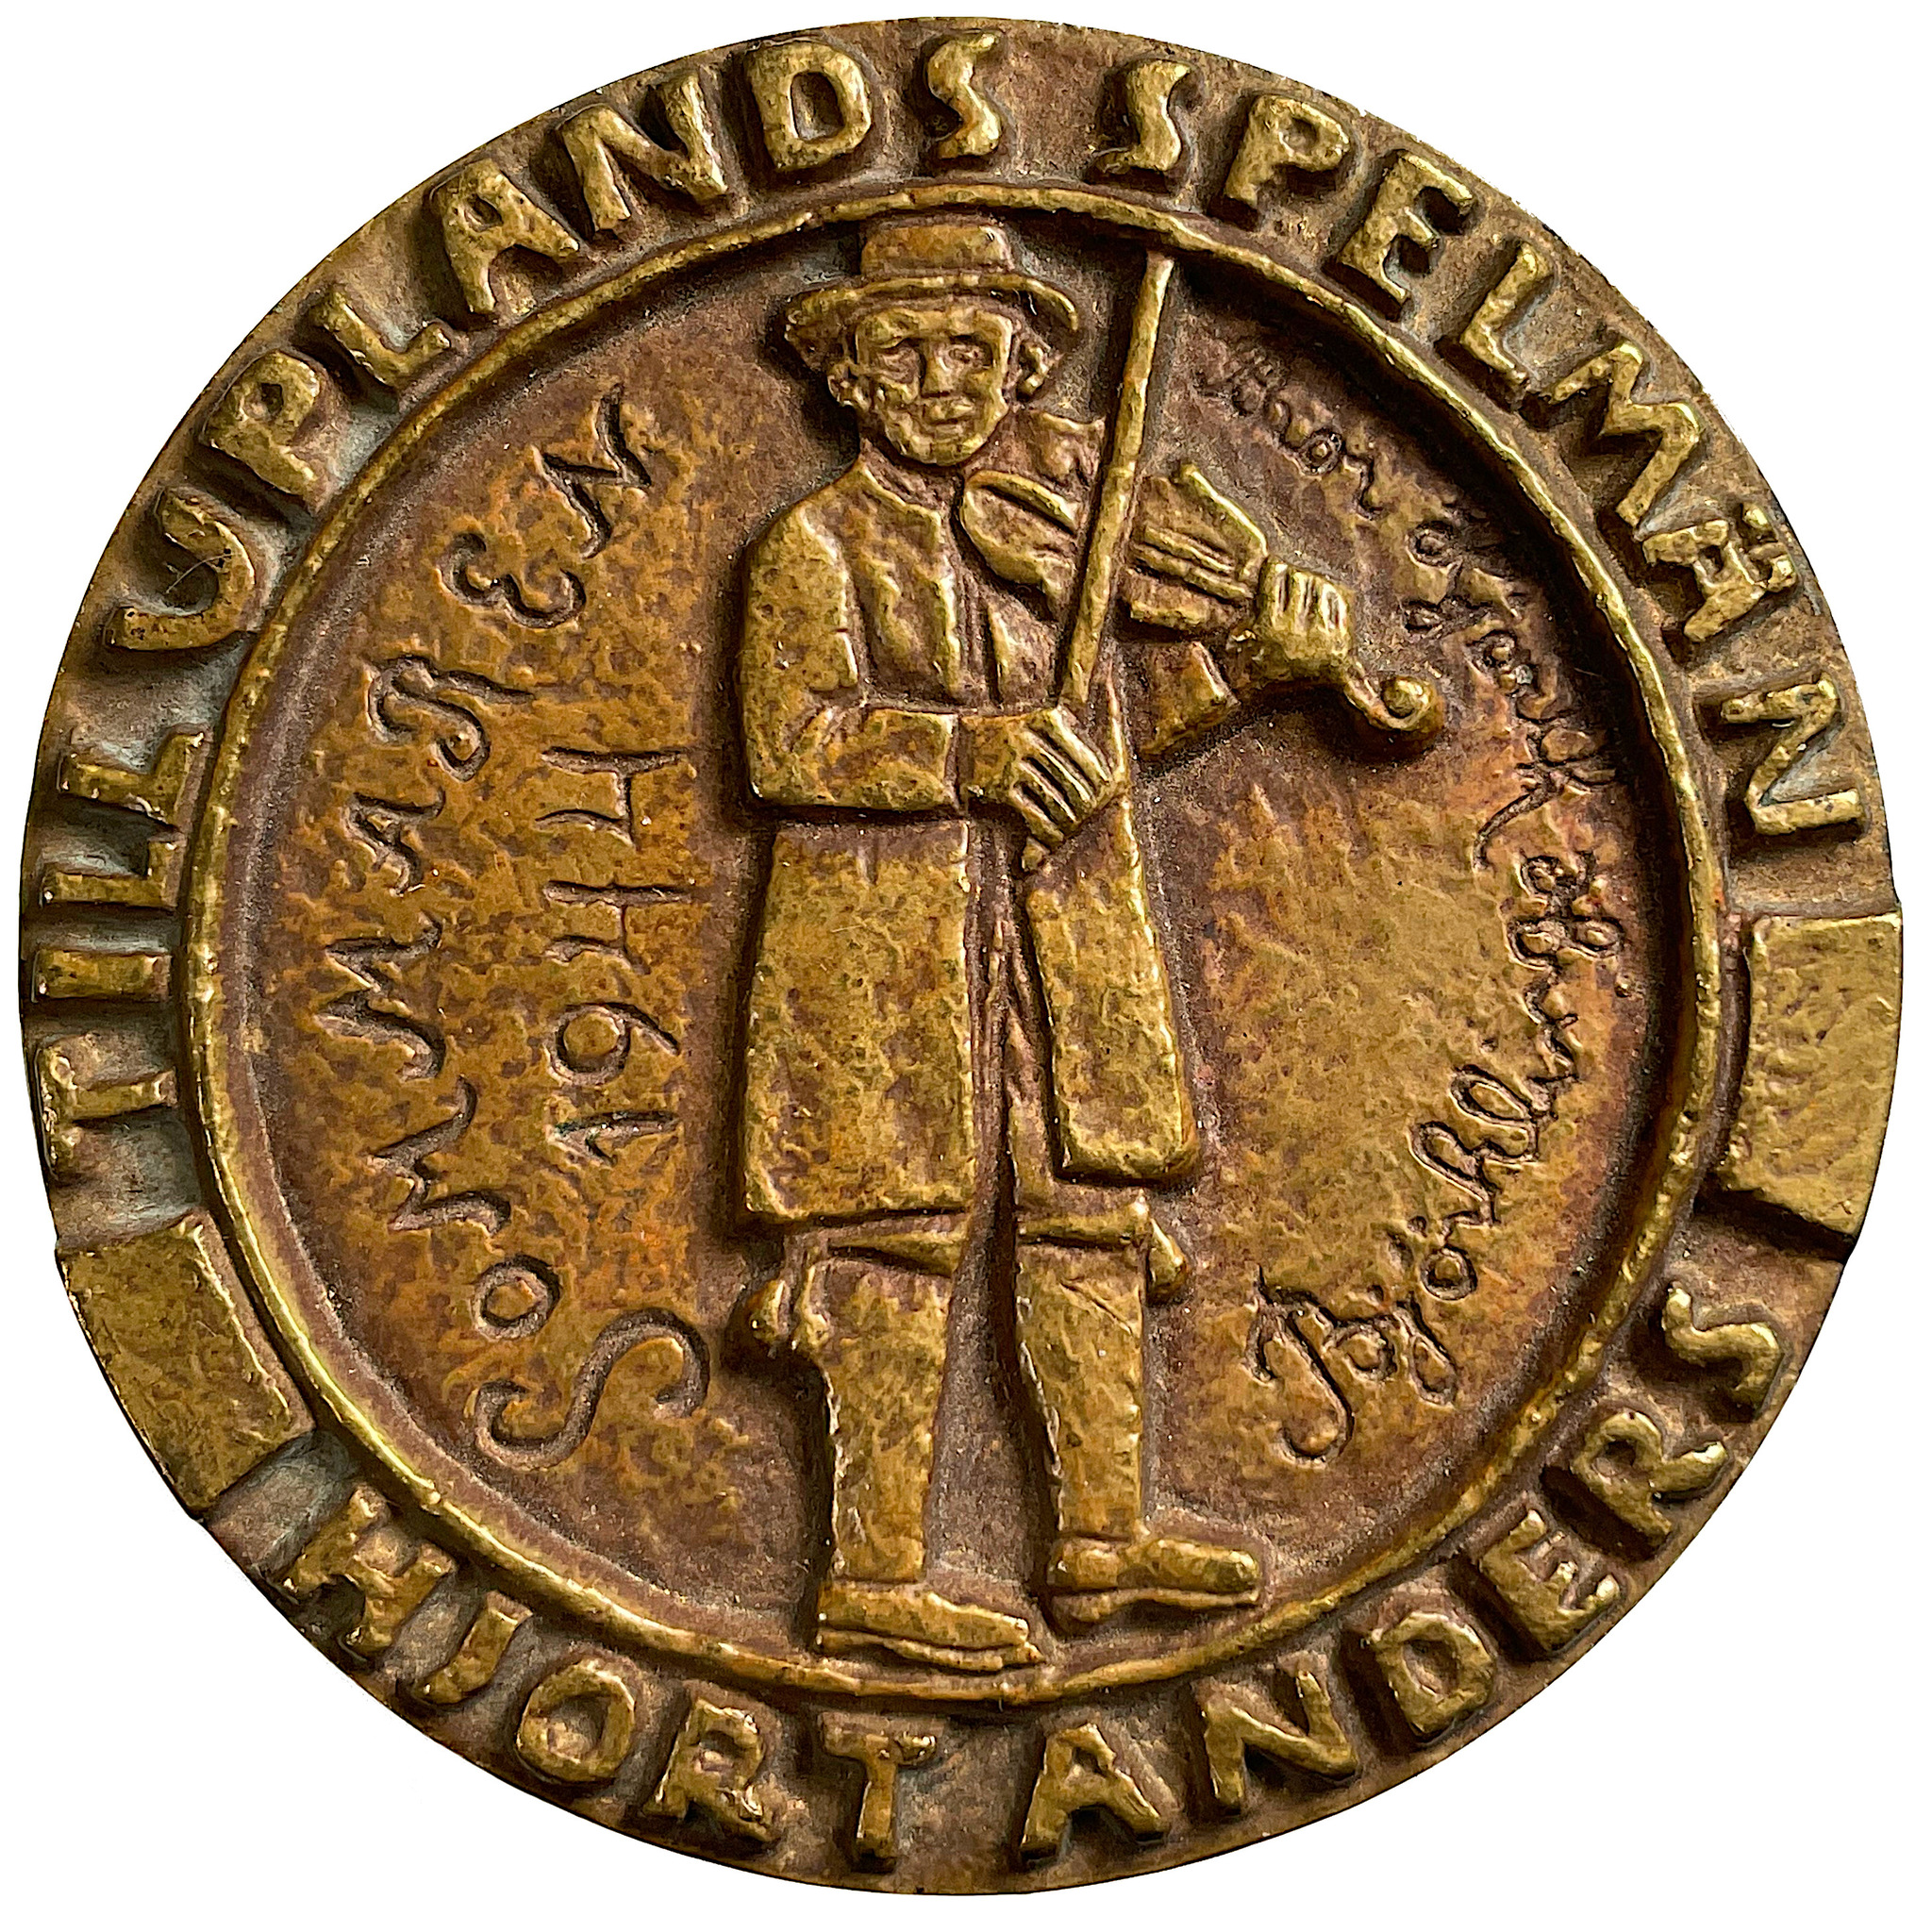 Gås-Andersmedaljen av Bror Hjorth, patinerad brons - MYCKET SÄLLSYNT - Endast 21 st utdelade